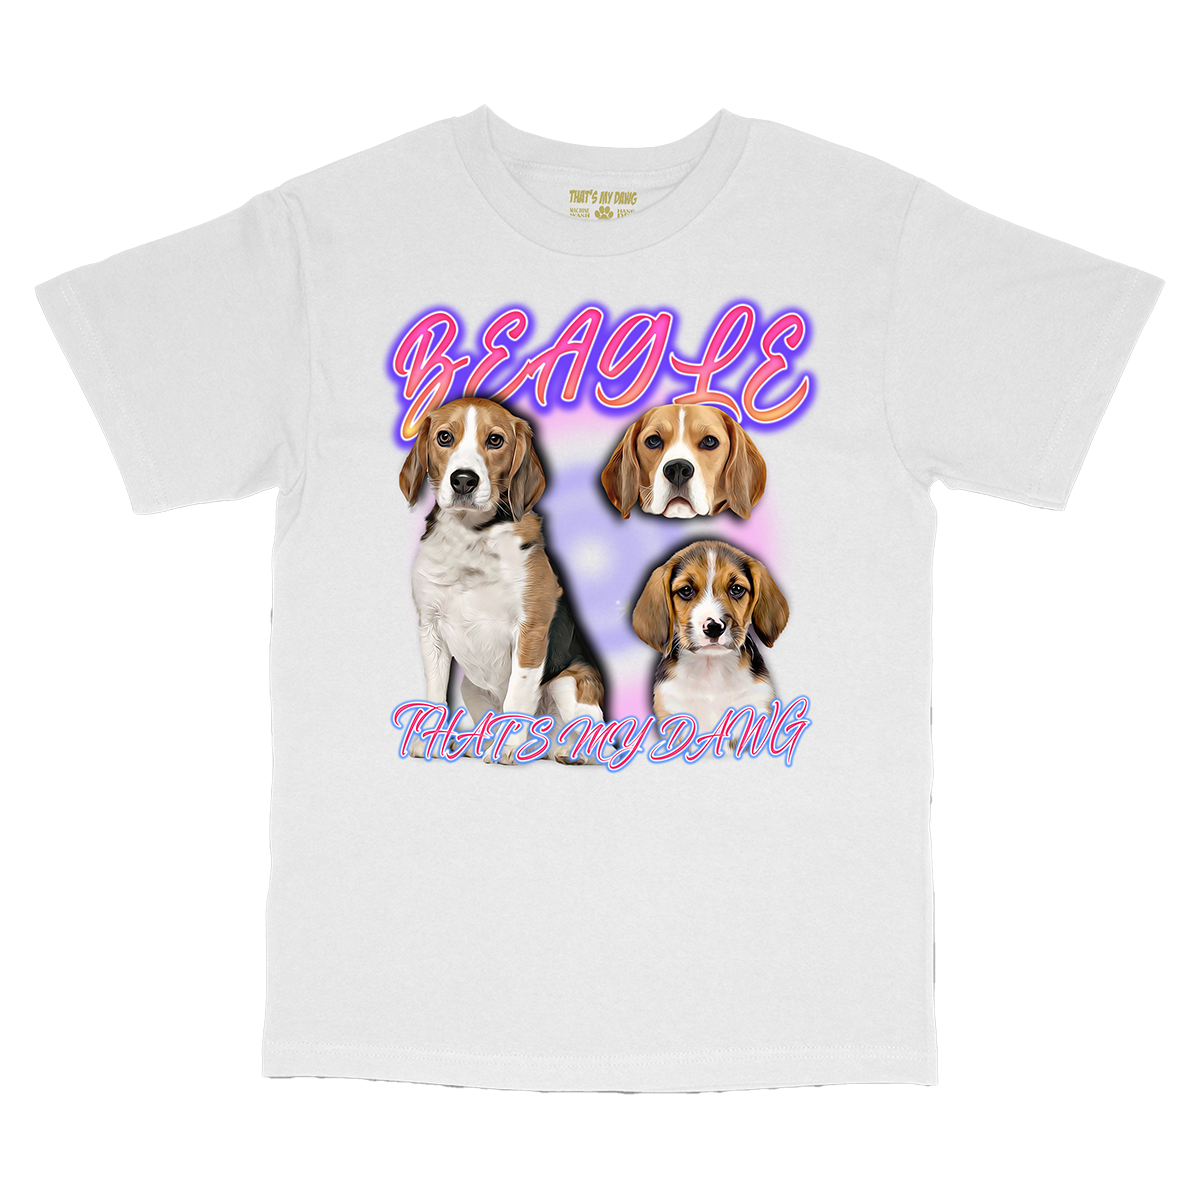 90's Style Beagle T-Shirts